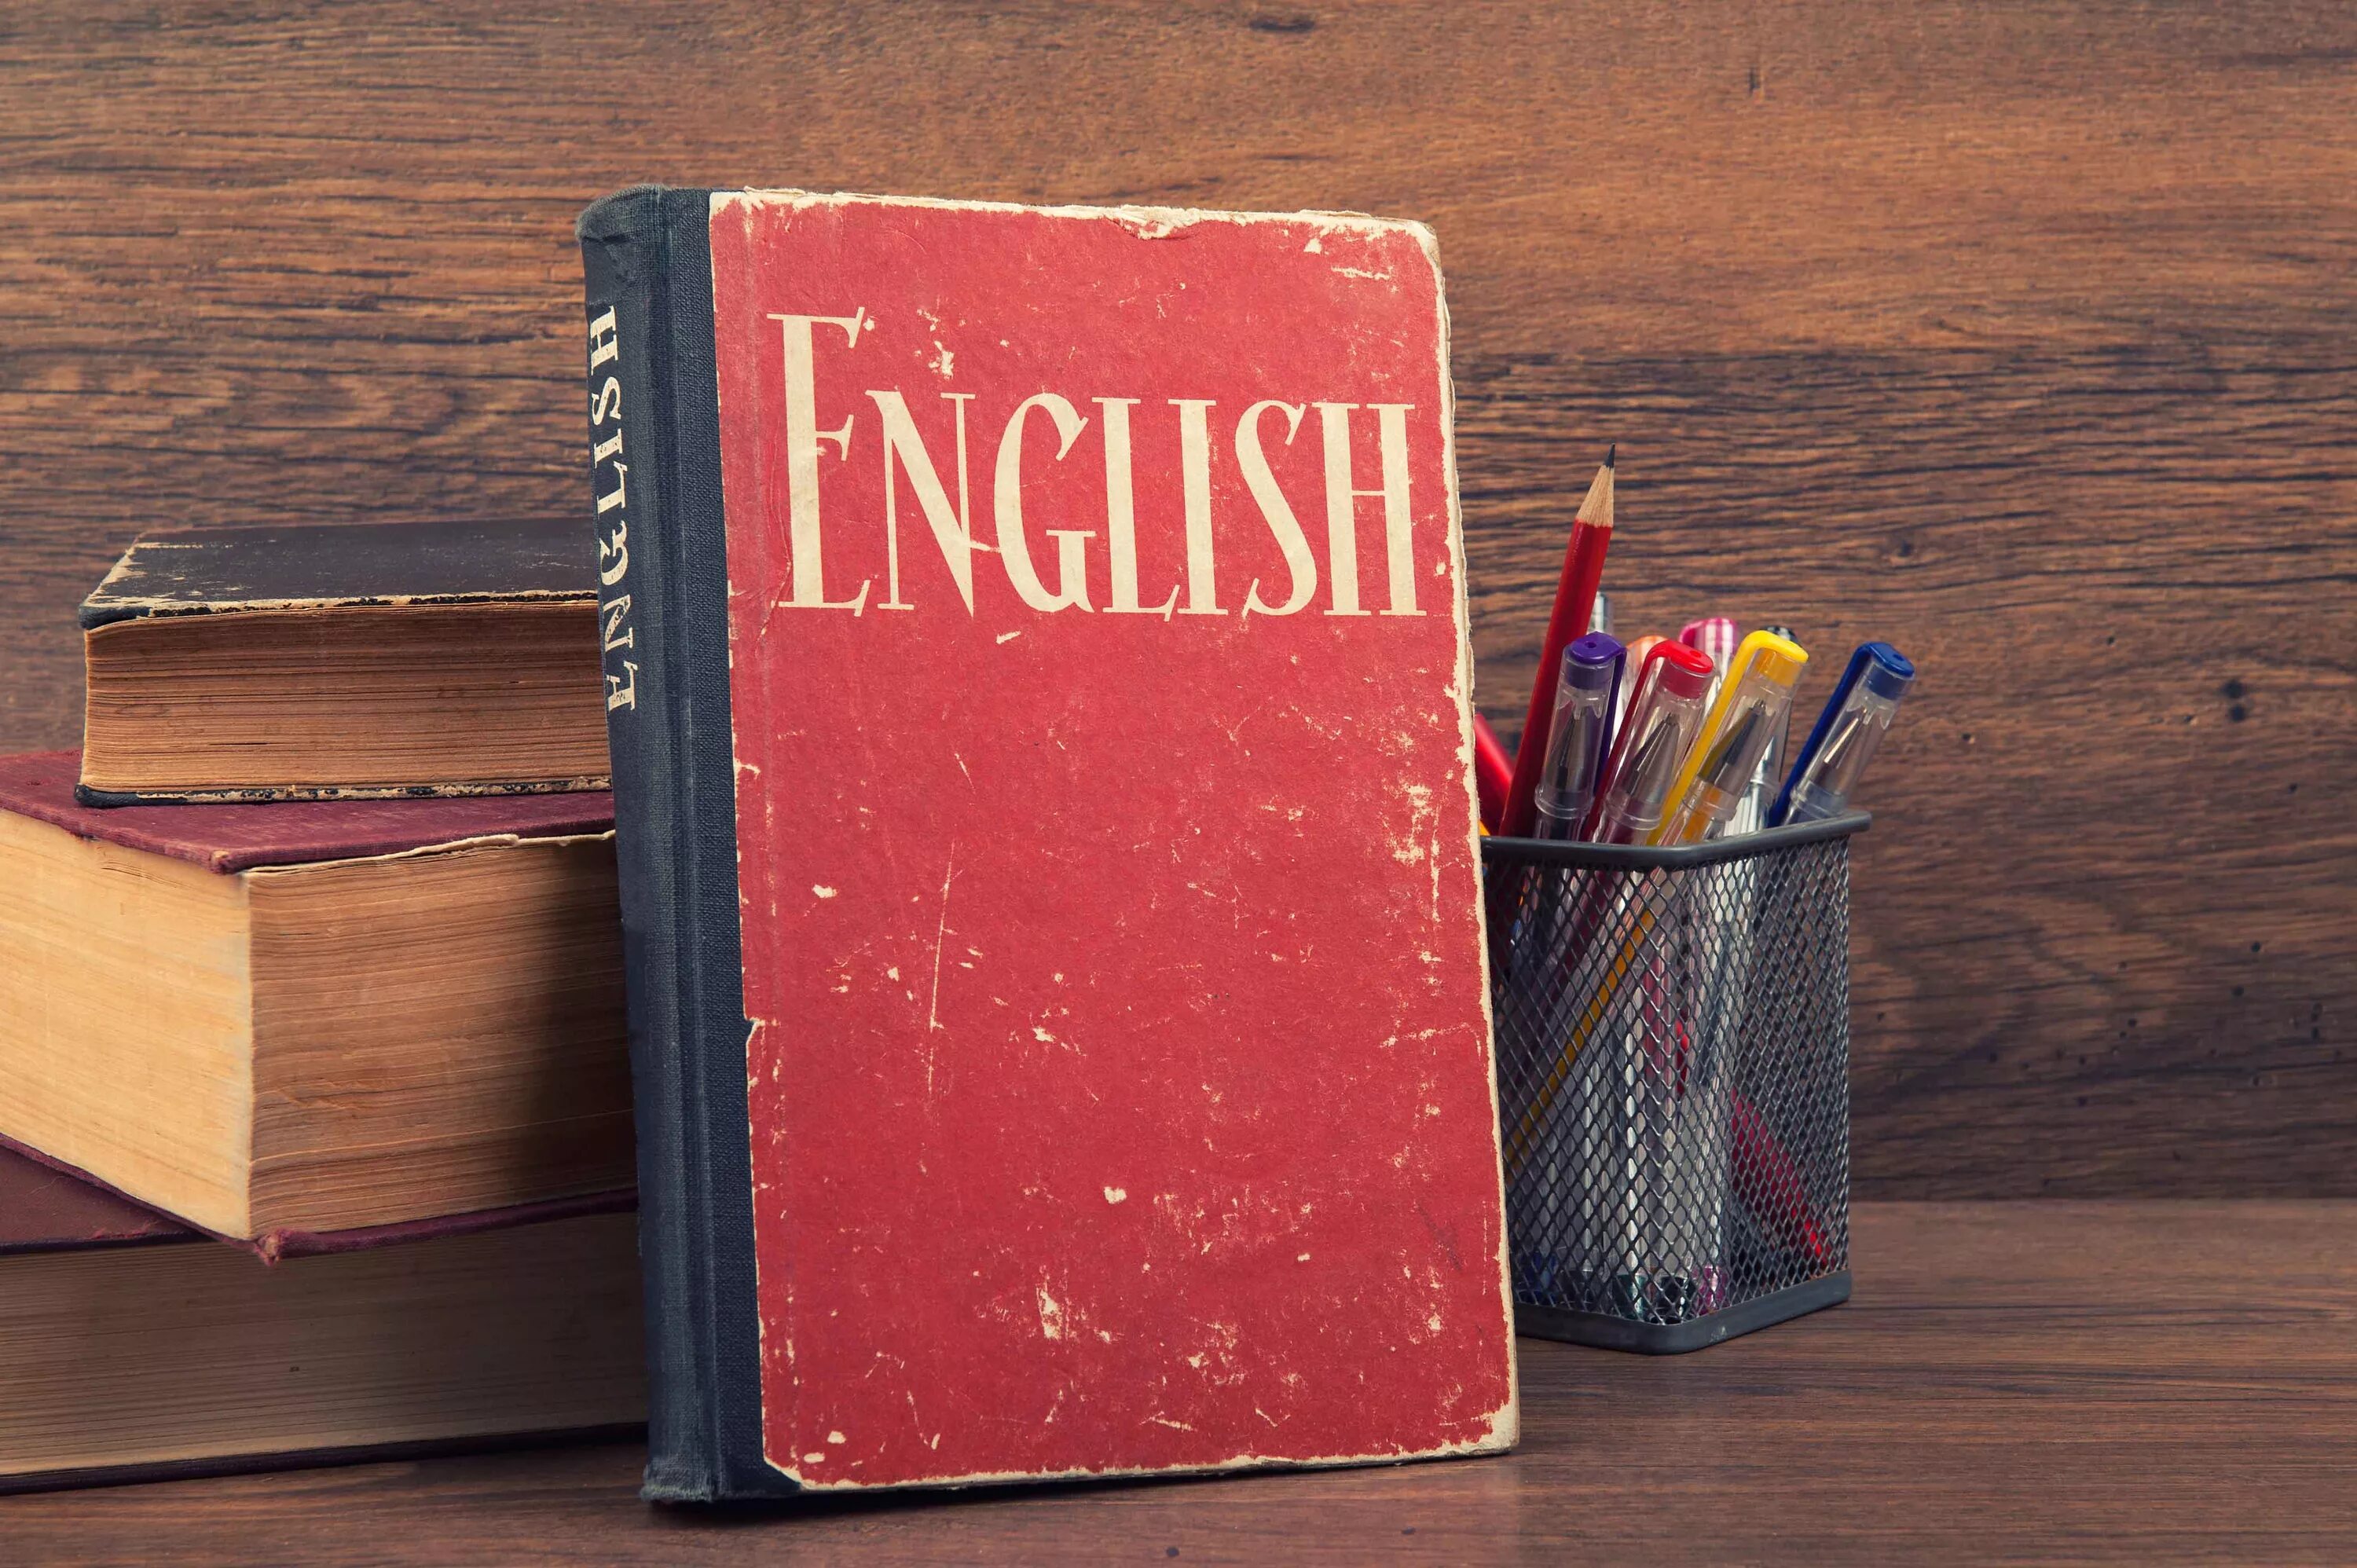 Знание англ языка. Английские книги на столе. English книга. Английский язык. Английский язык в картинках книга.